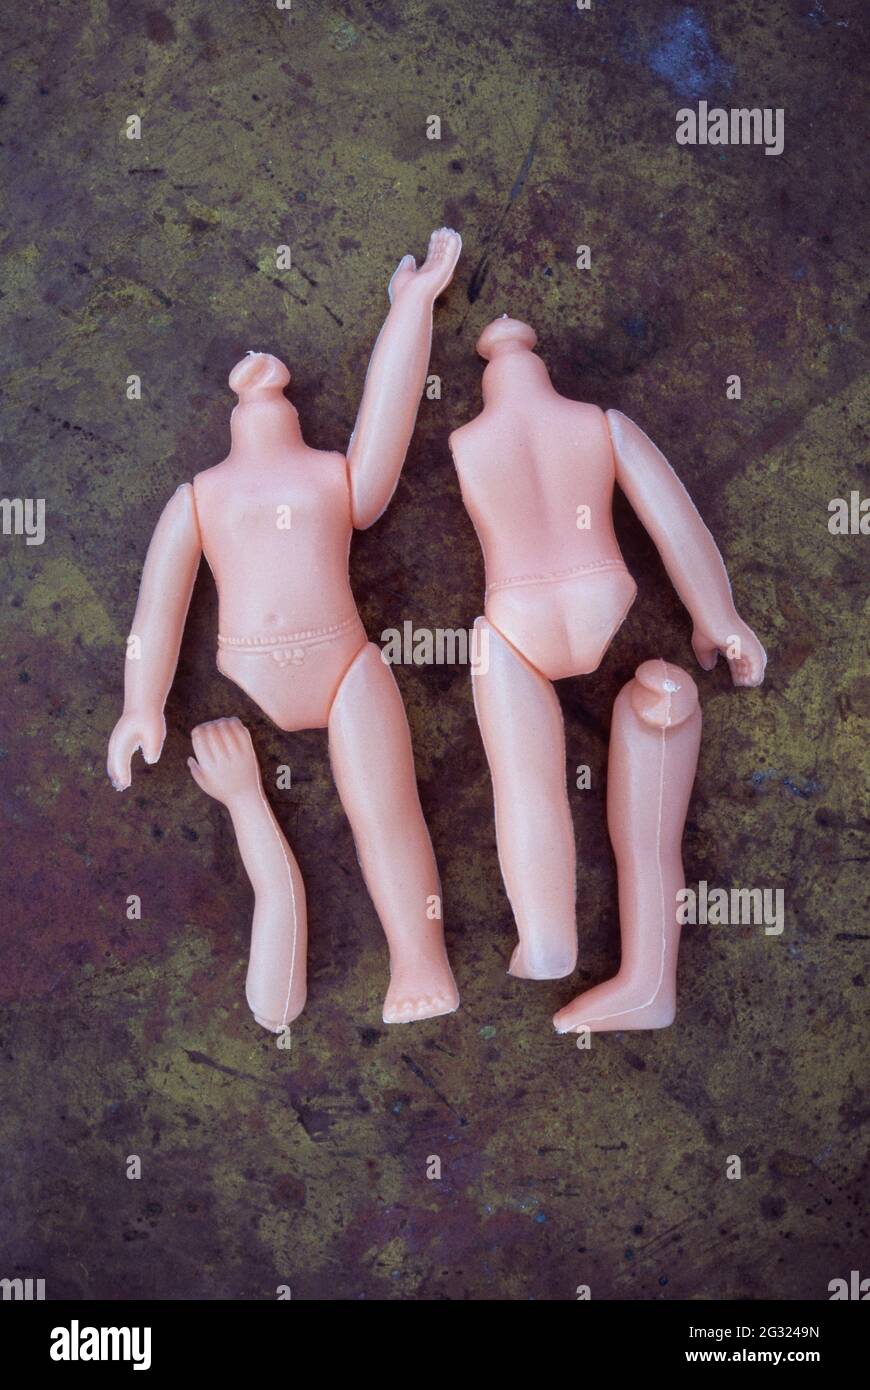 Zwei Körper moderner Plastikpuppen ohne Kopf und mit einigen Gliedmaßen, die auf angeschlättetem Messing liegen Stockfoto